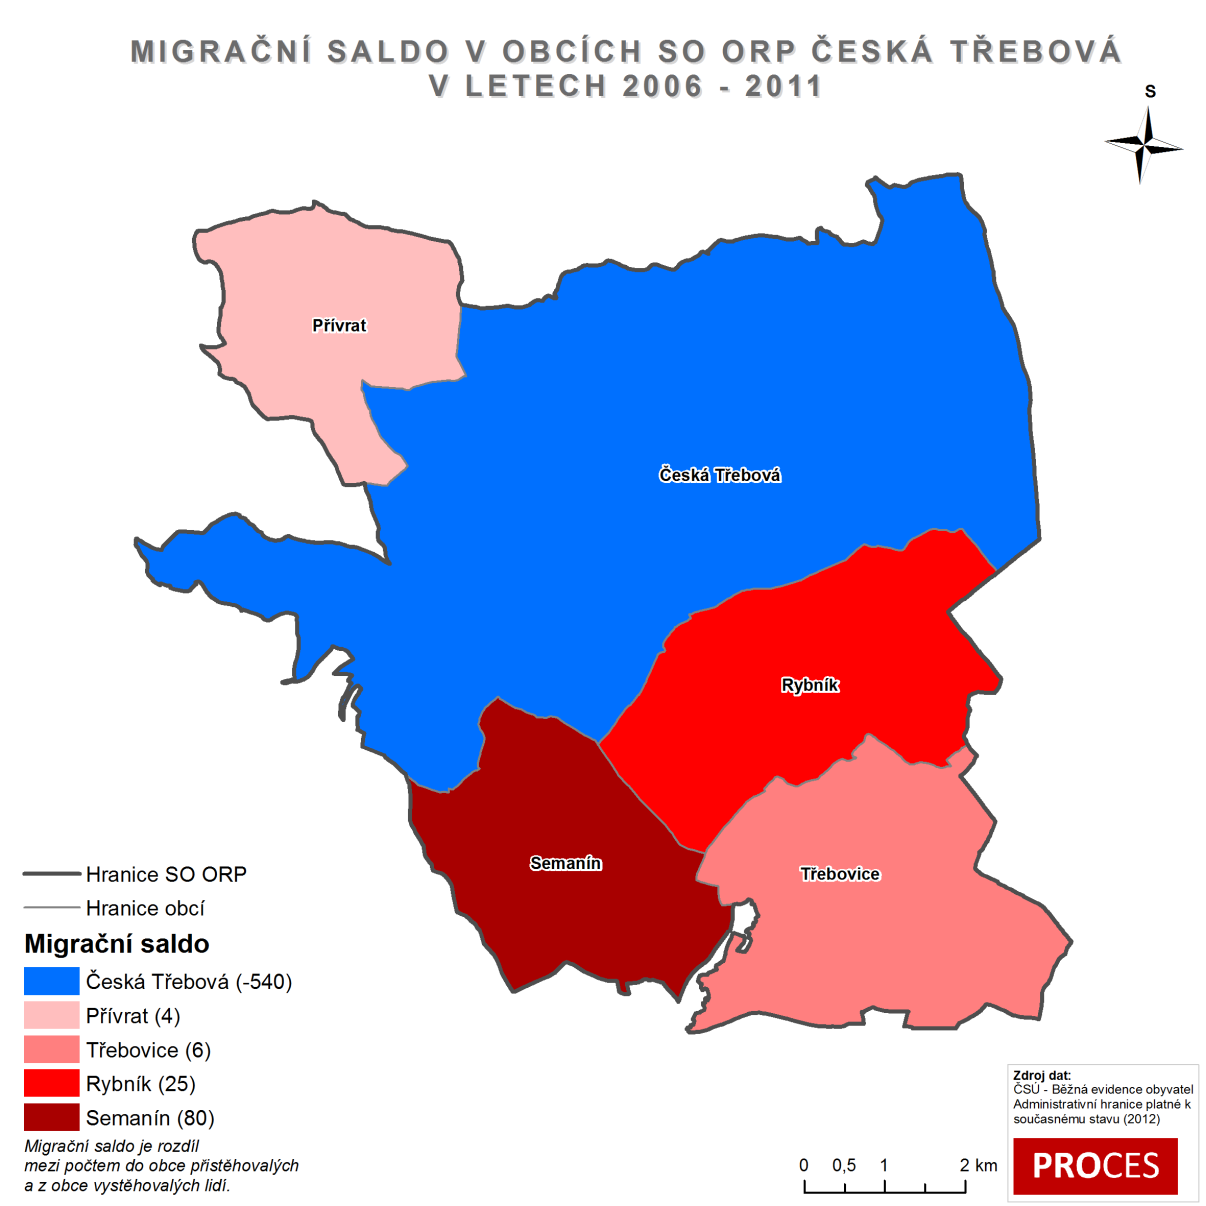 Z následujícího obrázku je patrné, že v obci Česká Třebová došlo v letech 2006 2011 k výraznému poklesu počtu obyvatel způsobenému migrací (540 obyvatel).